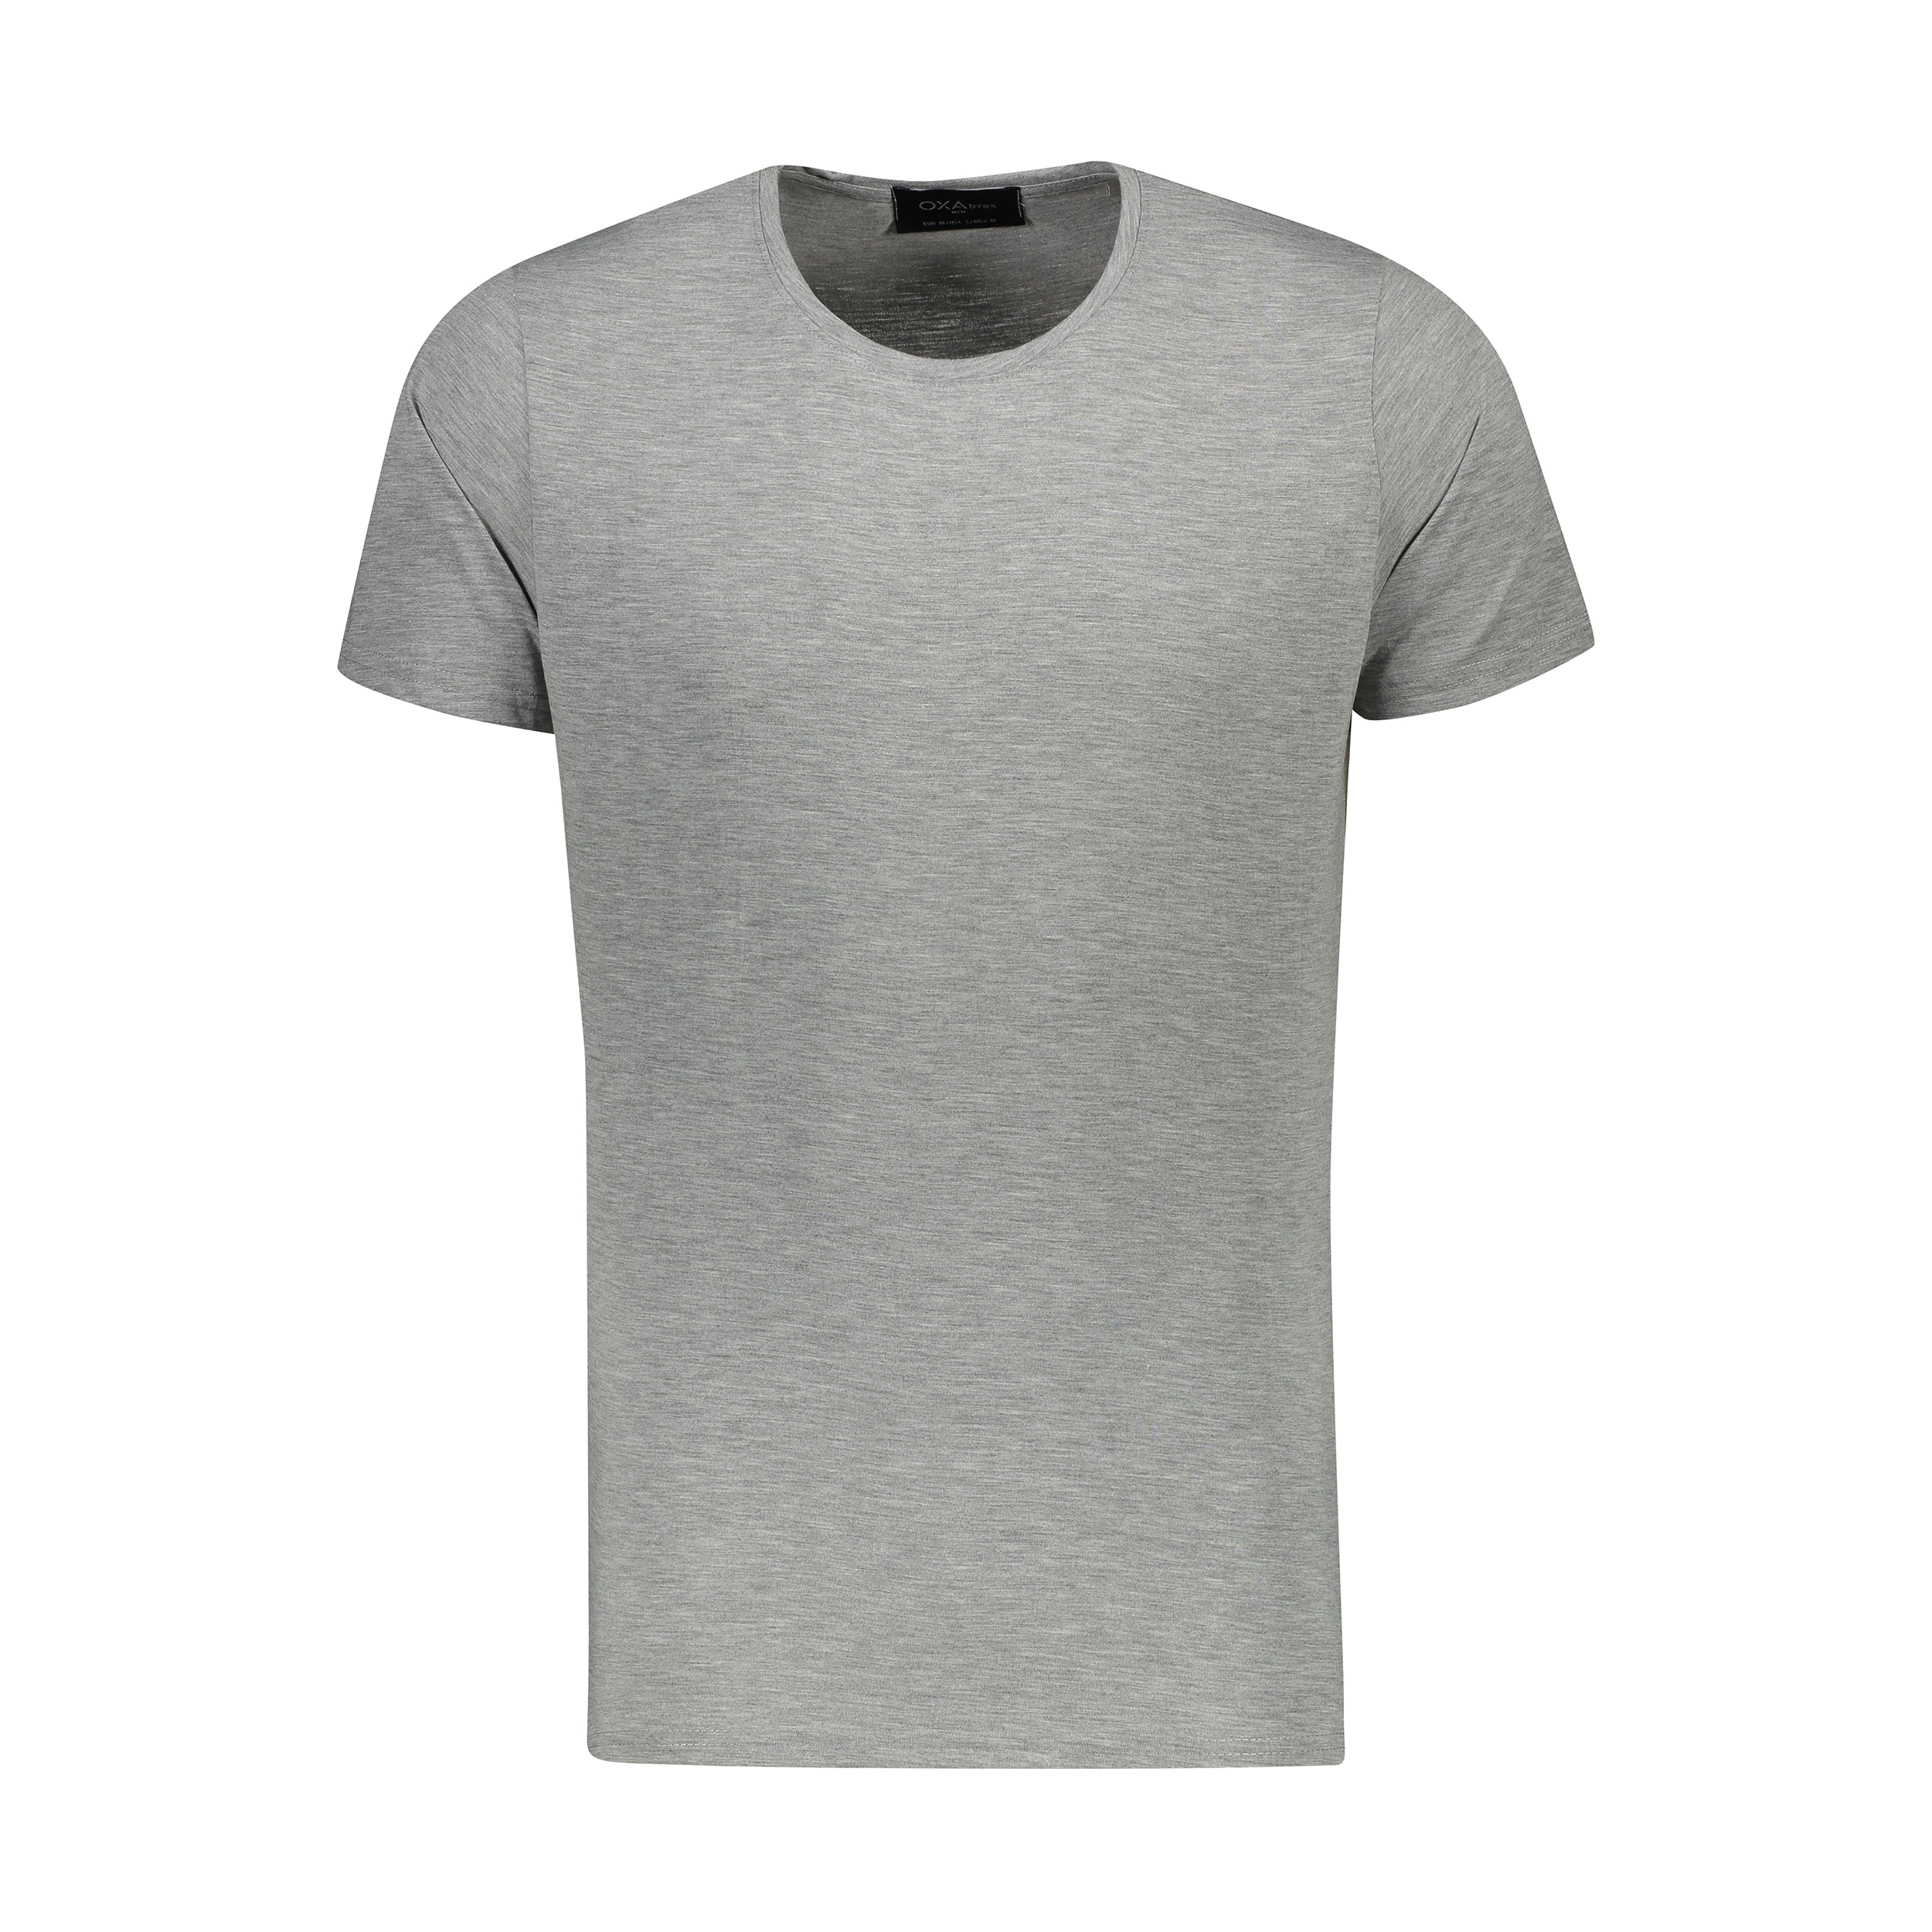 نکته خرید - قیمت روز تی شرت آستین کوتاه مردانه اکزاترس مدل P032001112370100-112 خرید